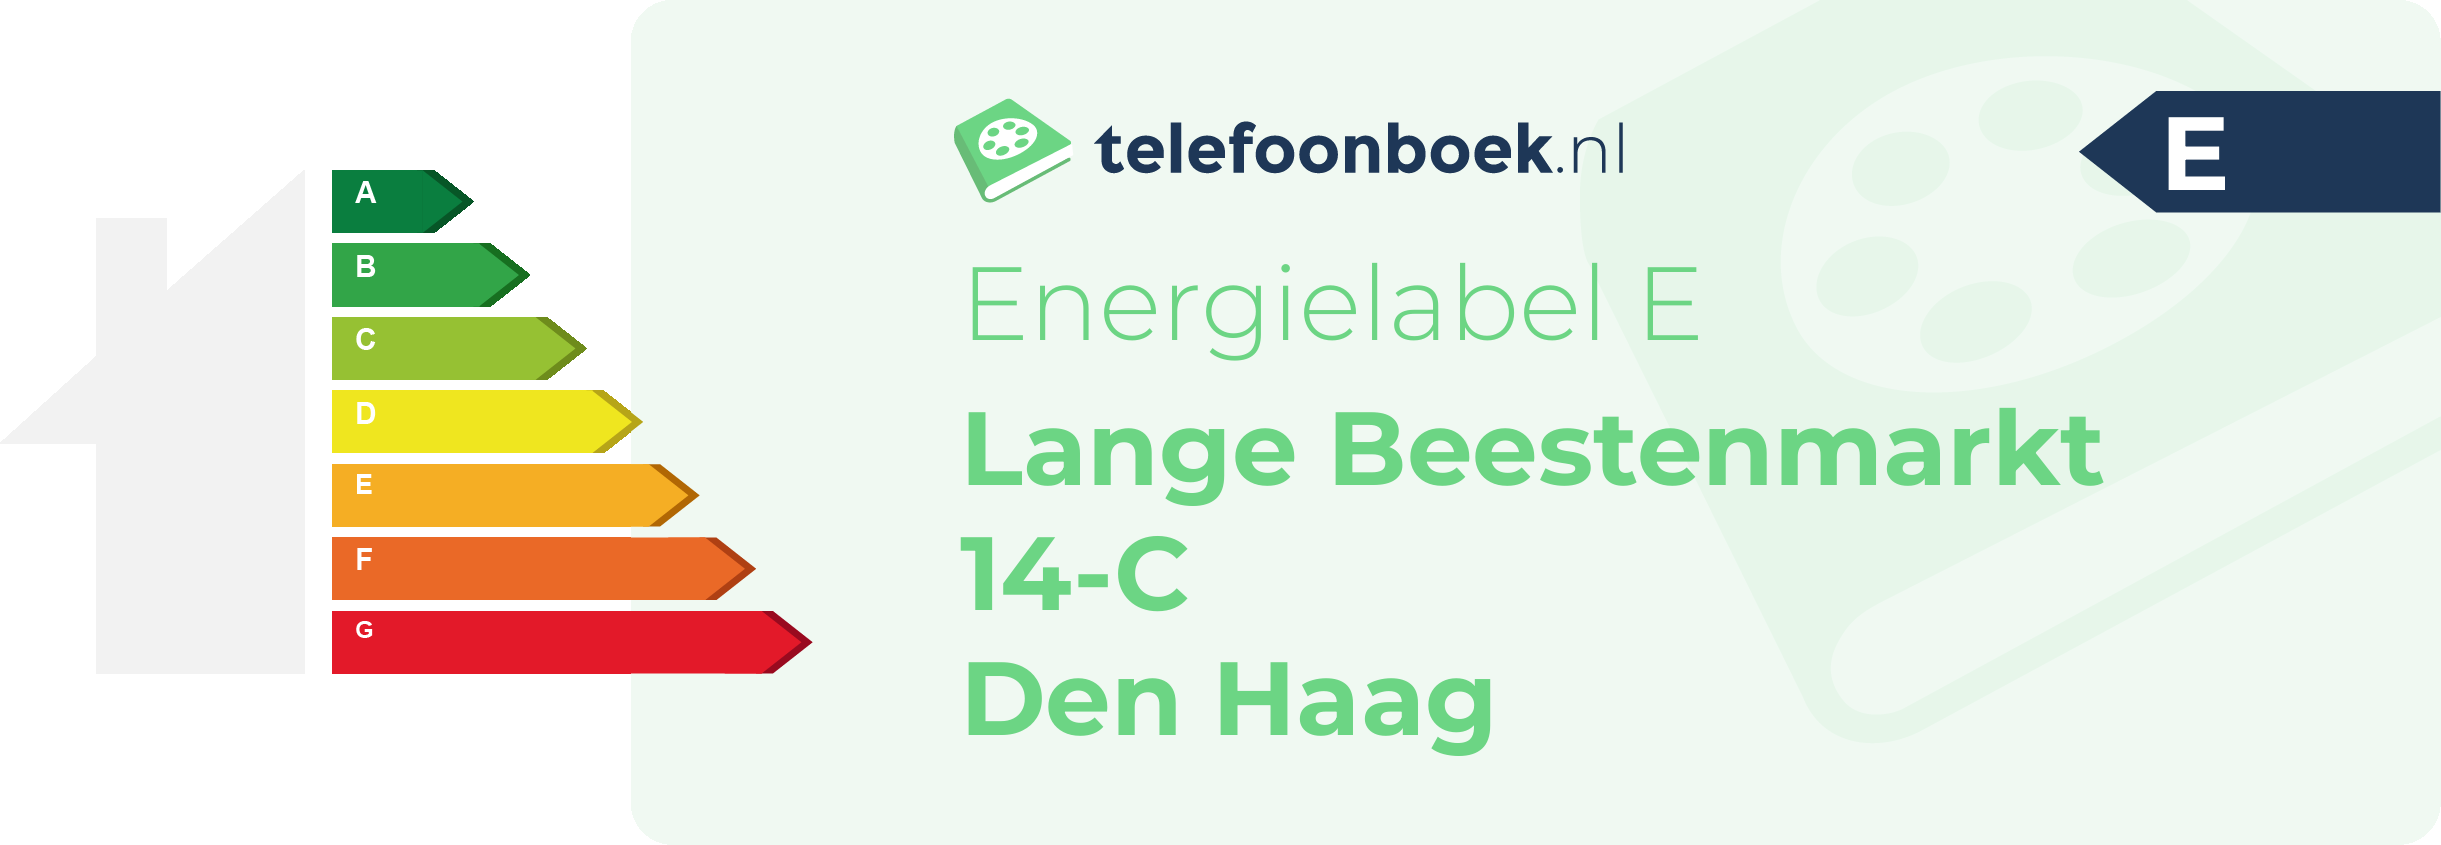 Energielabel Lange Beestenmarkt 14-C Den Haag